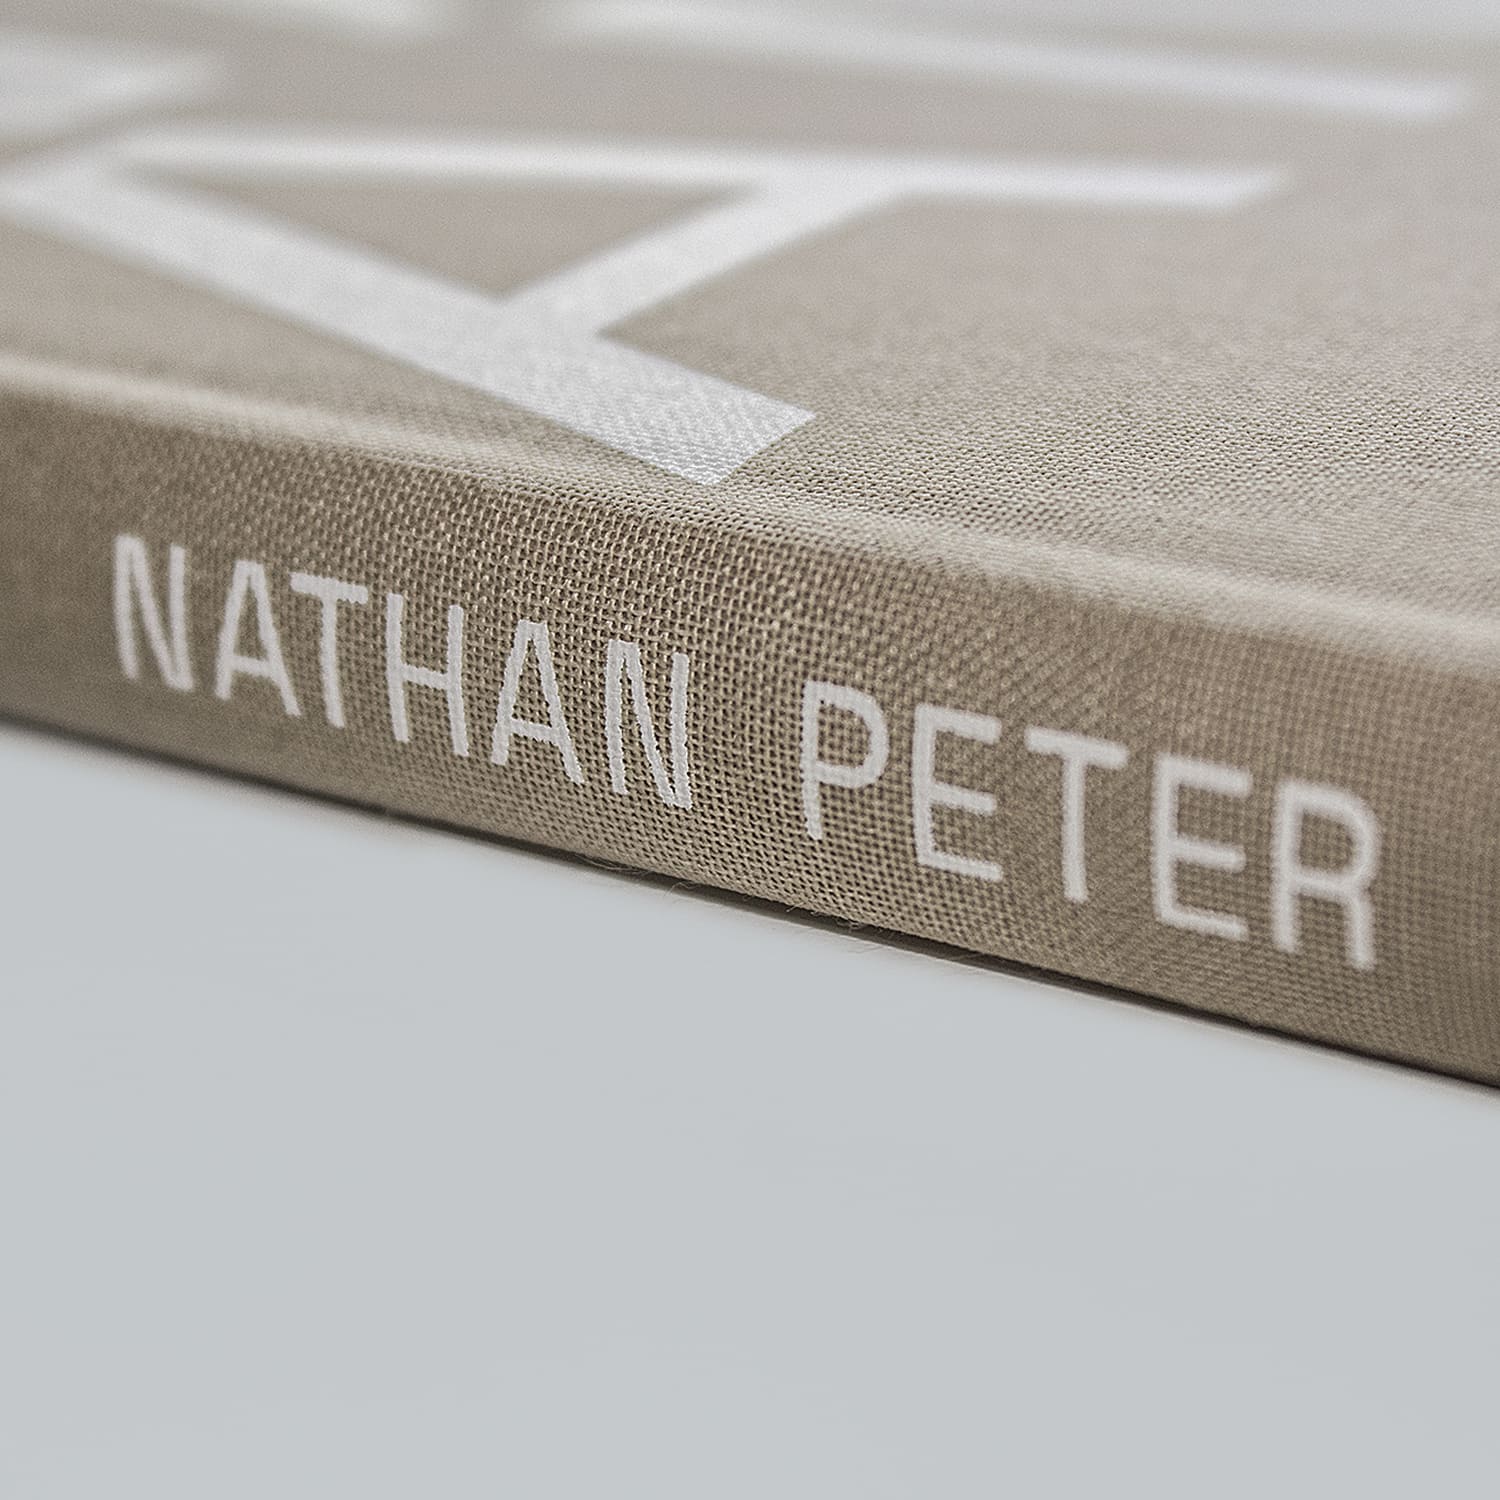 Nathan Peter Catalog